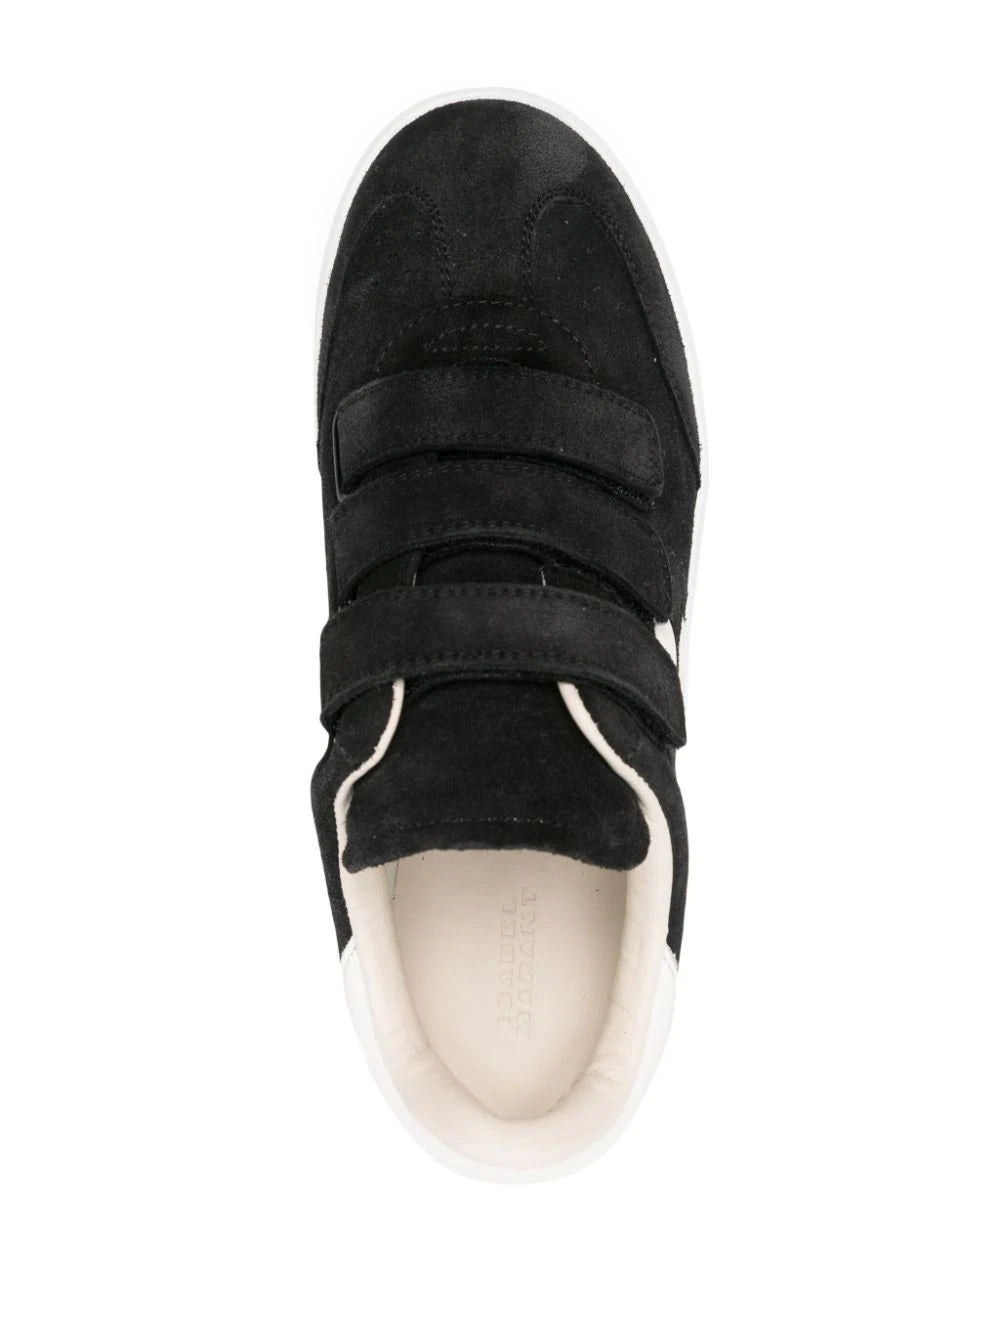 Beth GA Sneakers in Black/Ecru